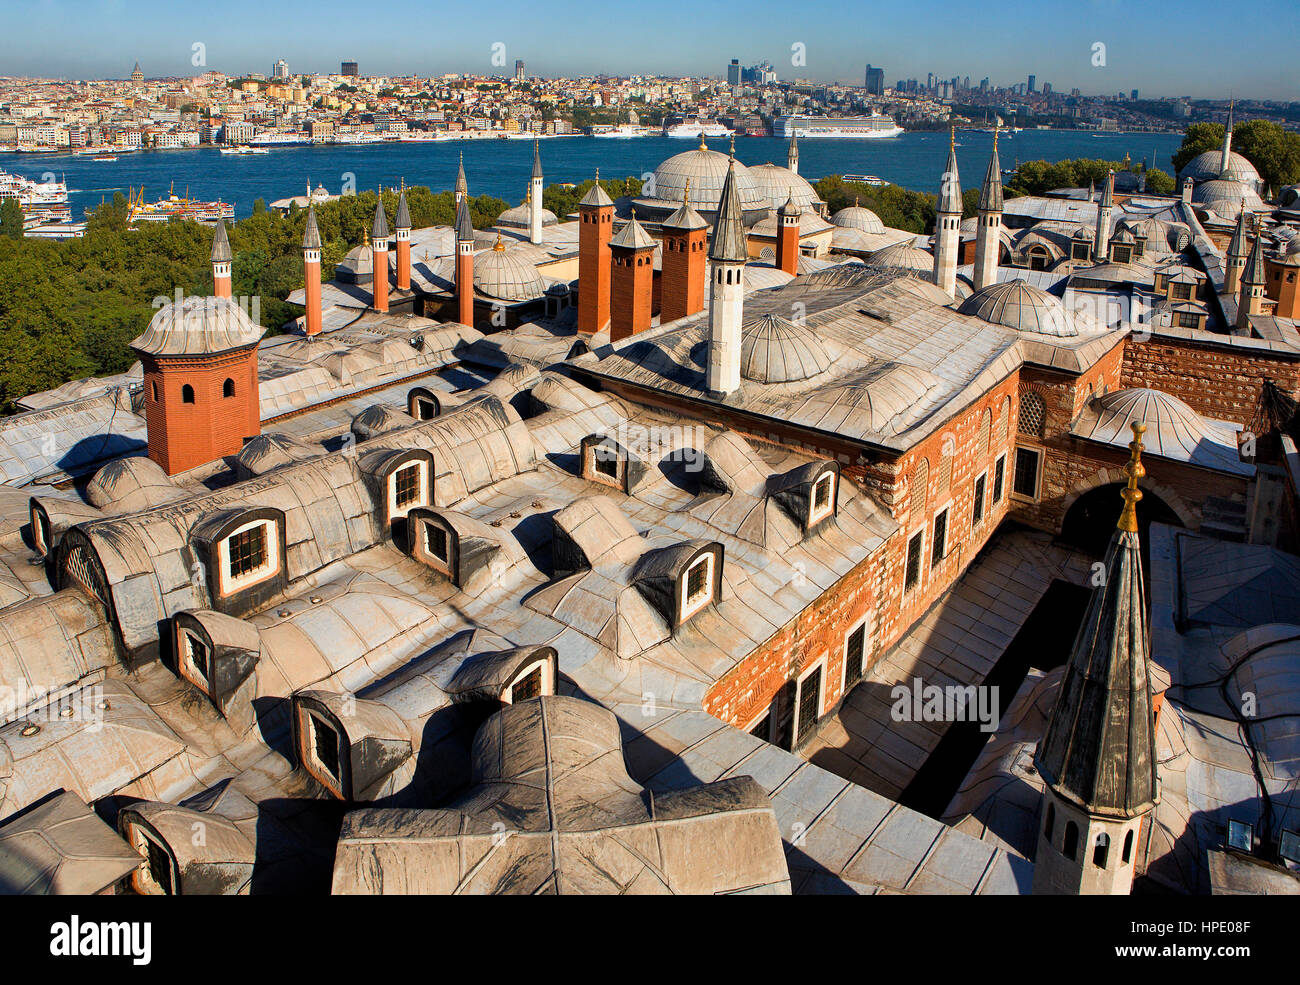 Topkapi-Palast, Dach des Harems. Im Hintergrund Bosporus und Viertel Beyoglu, Sisl und Besiktas. Istanbul. Turkei Stockfoto